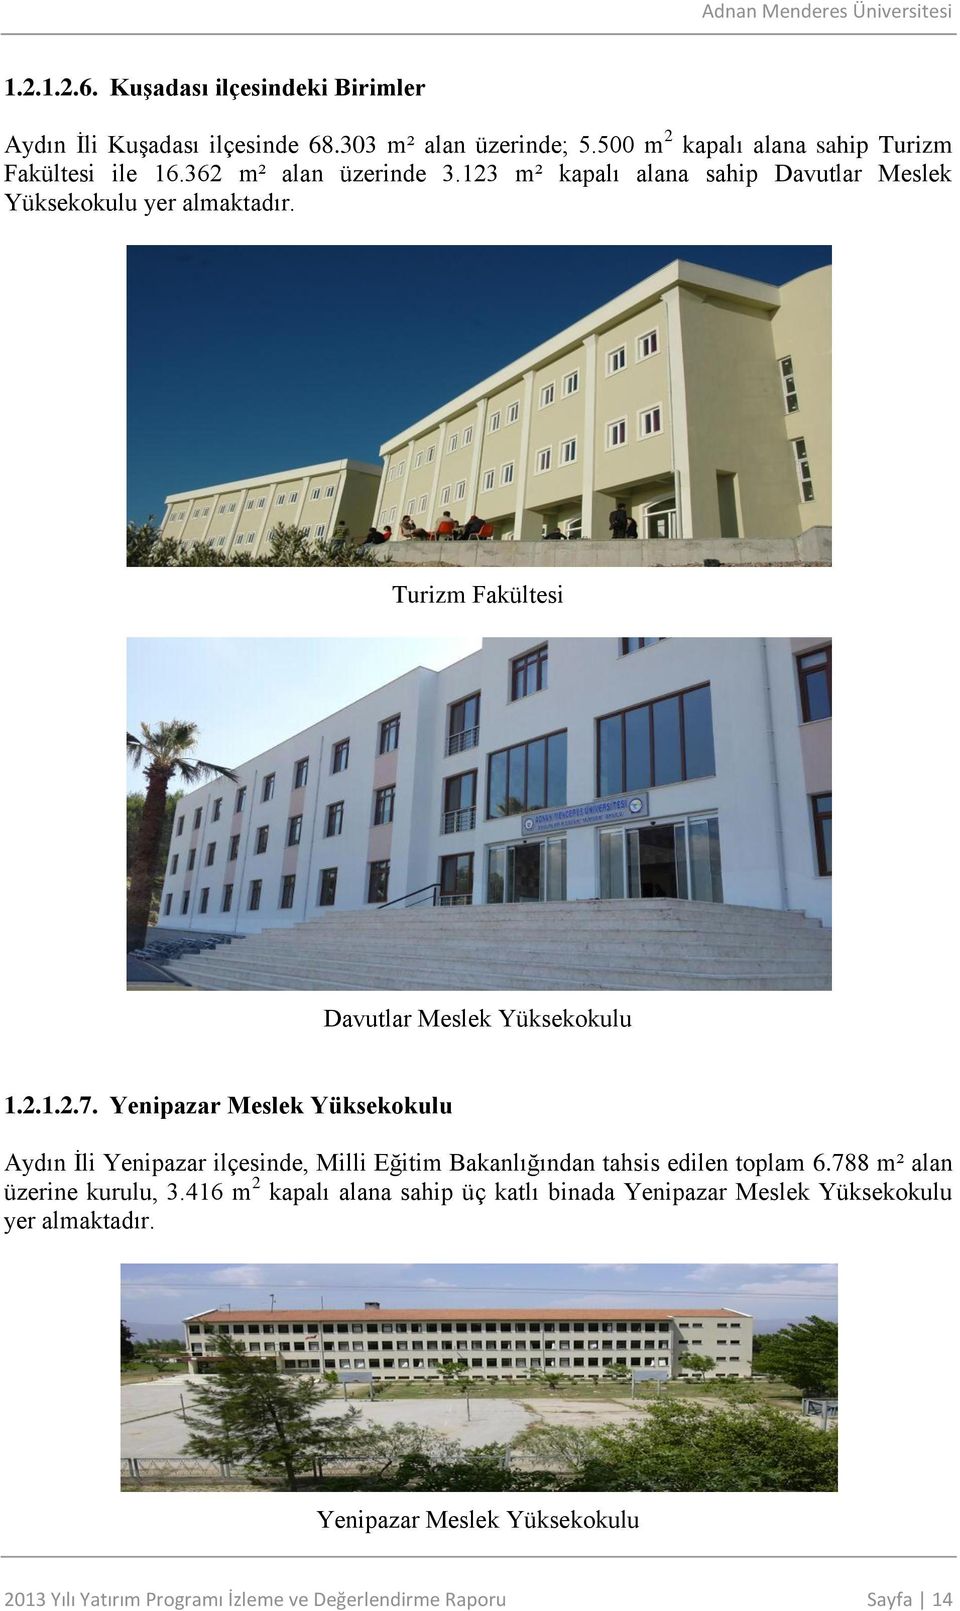 Yenipazar Meslek Yüksekokulu Aydın İli Yenipazar ilçesinde, Milli Eğitim Bakanlığından tahsis edilen toplam 6.788 m² alan üzerine kurulu, 3.